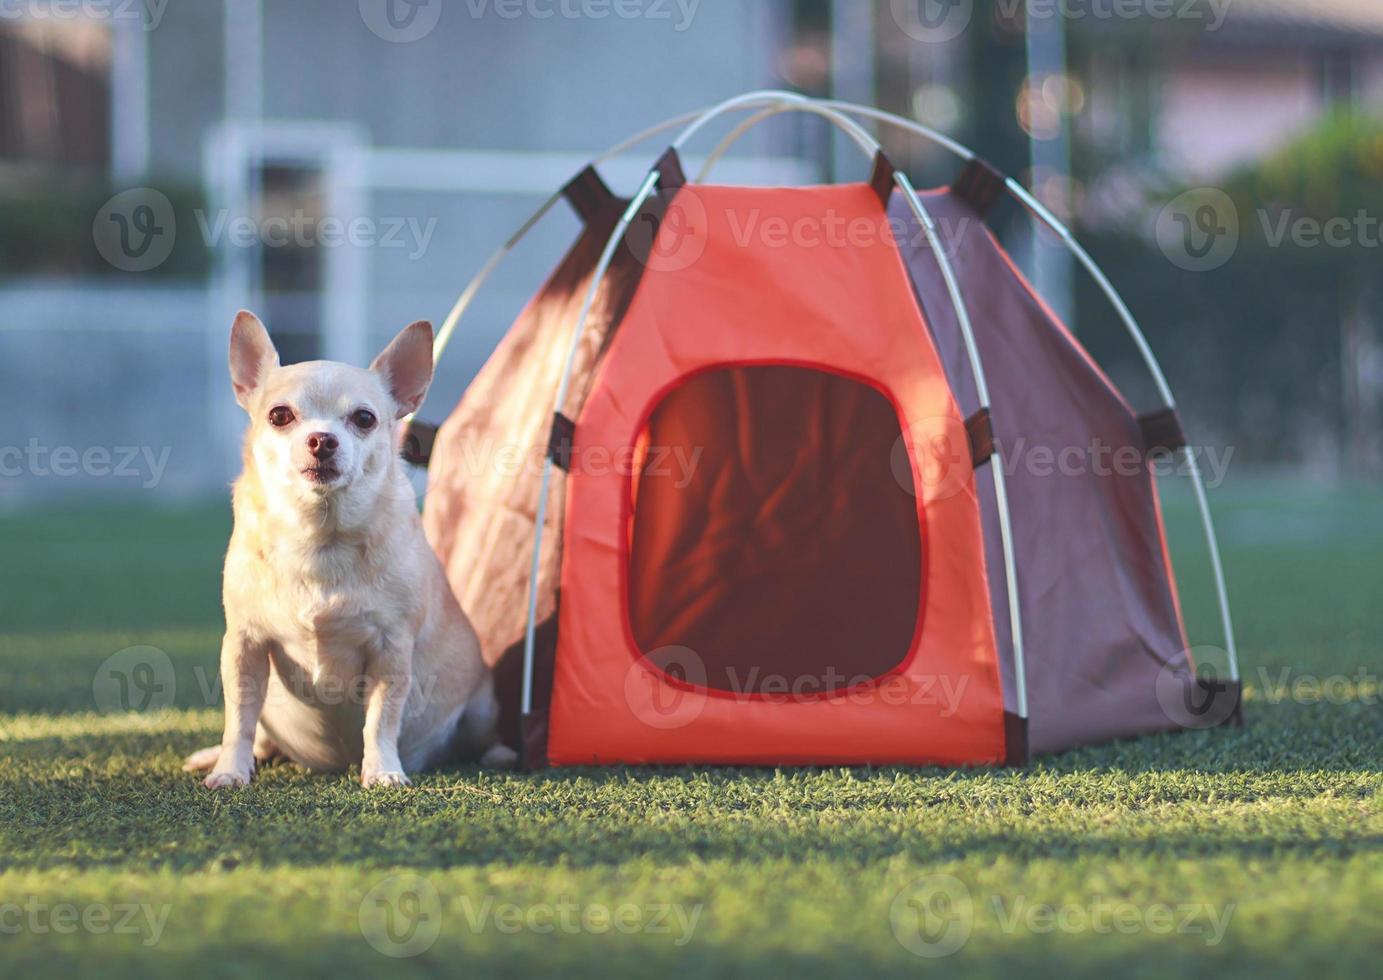 chien chihuahua brun à cheveux courts assis devant une tente de camping orange sur l'herbe verte, en plein air avec la lumière du soleil du matin, regardant la caméra. concept de voyage pour animaux de compagnie. photo